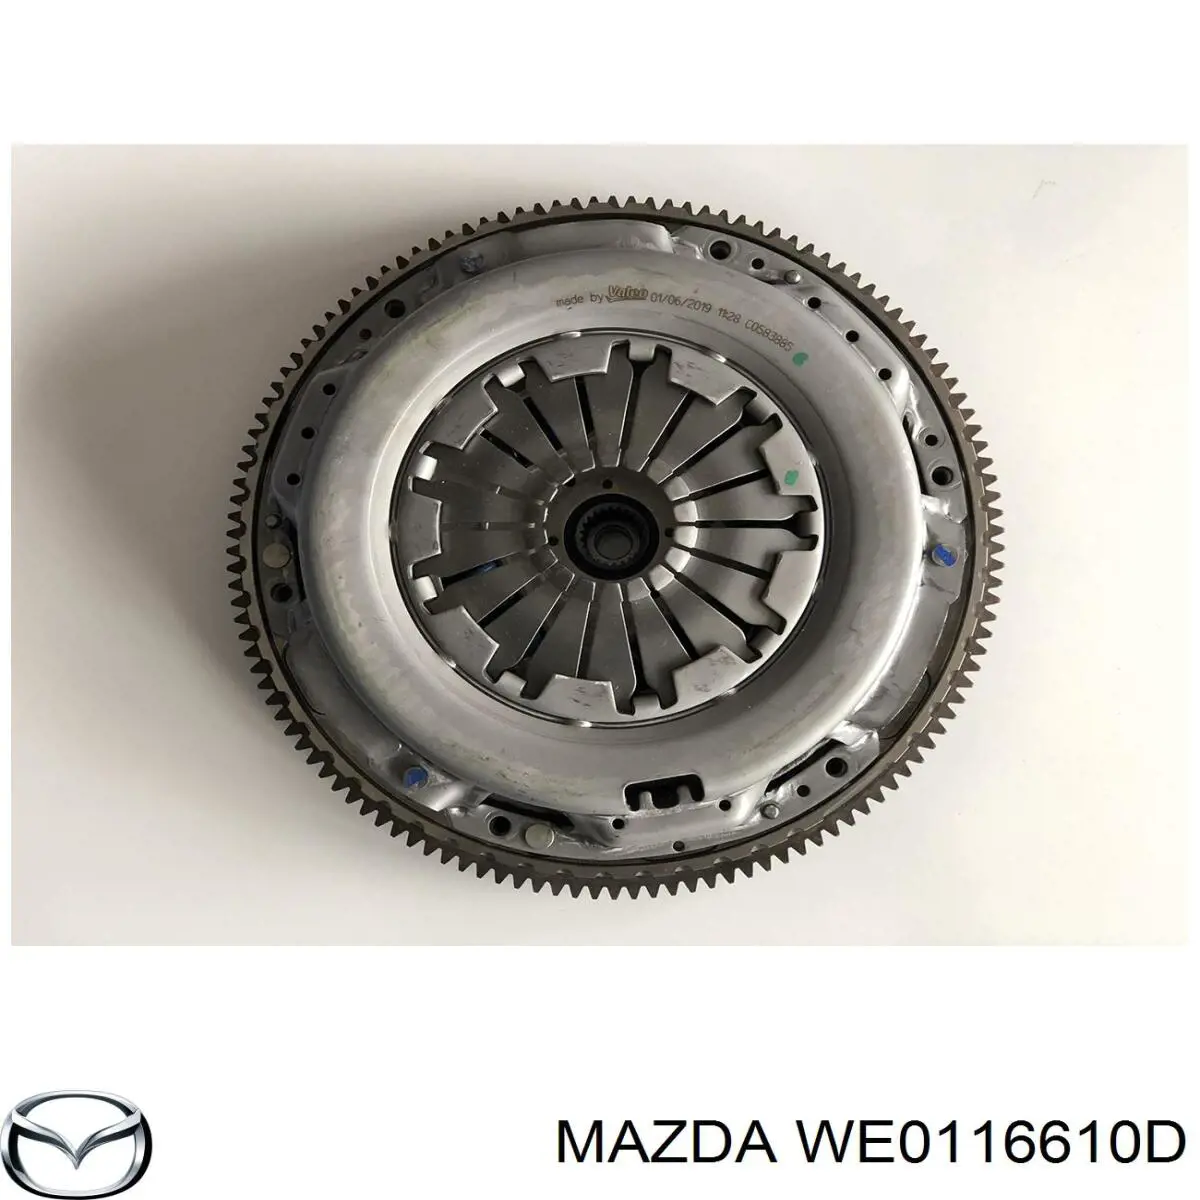 WE0116610D Mazda volante de motor